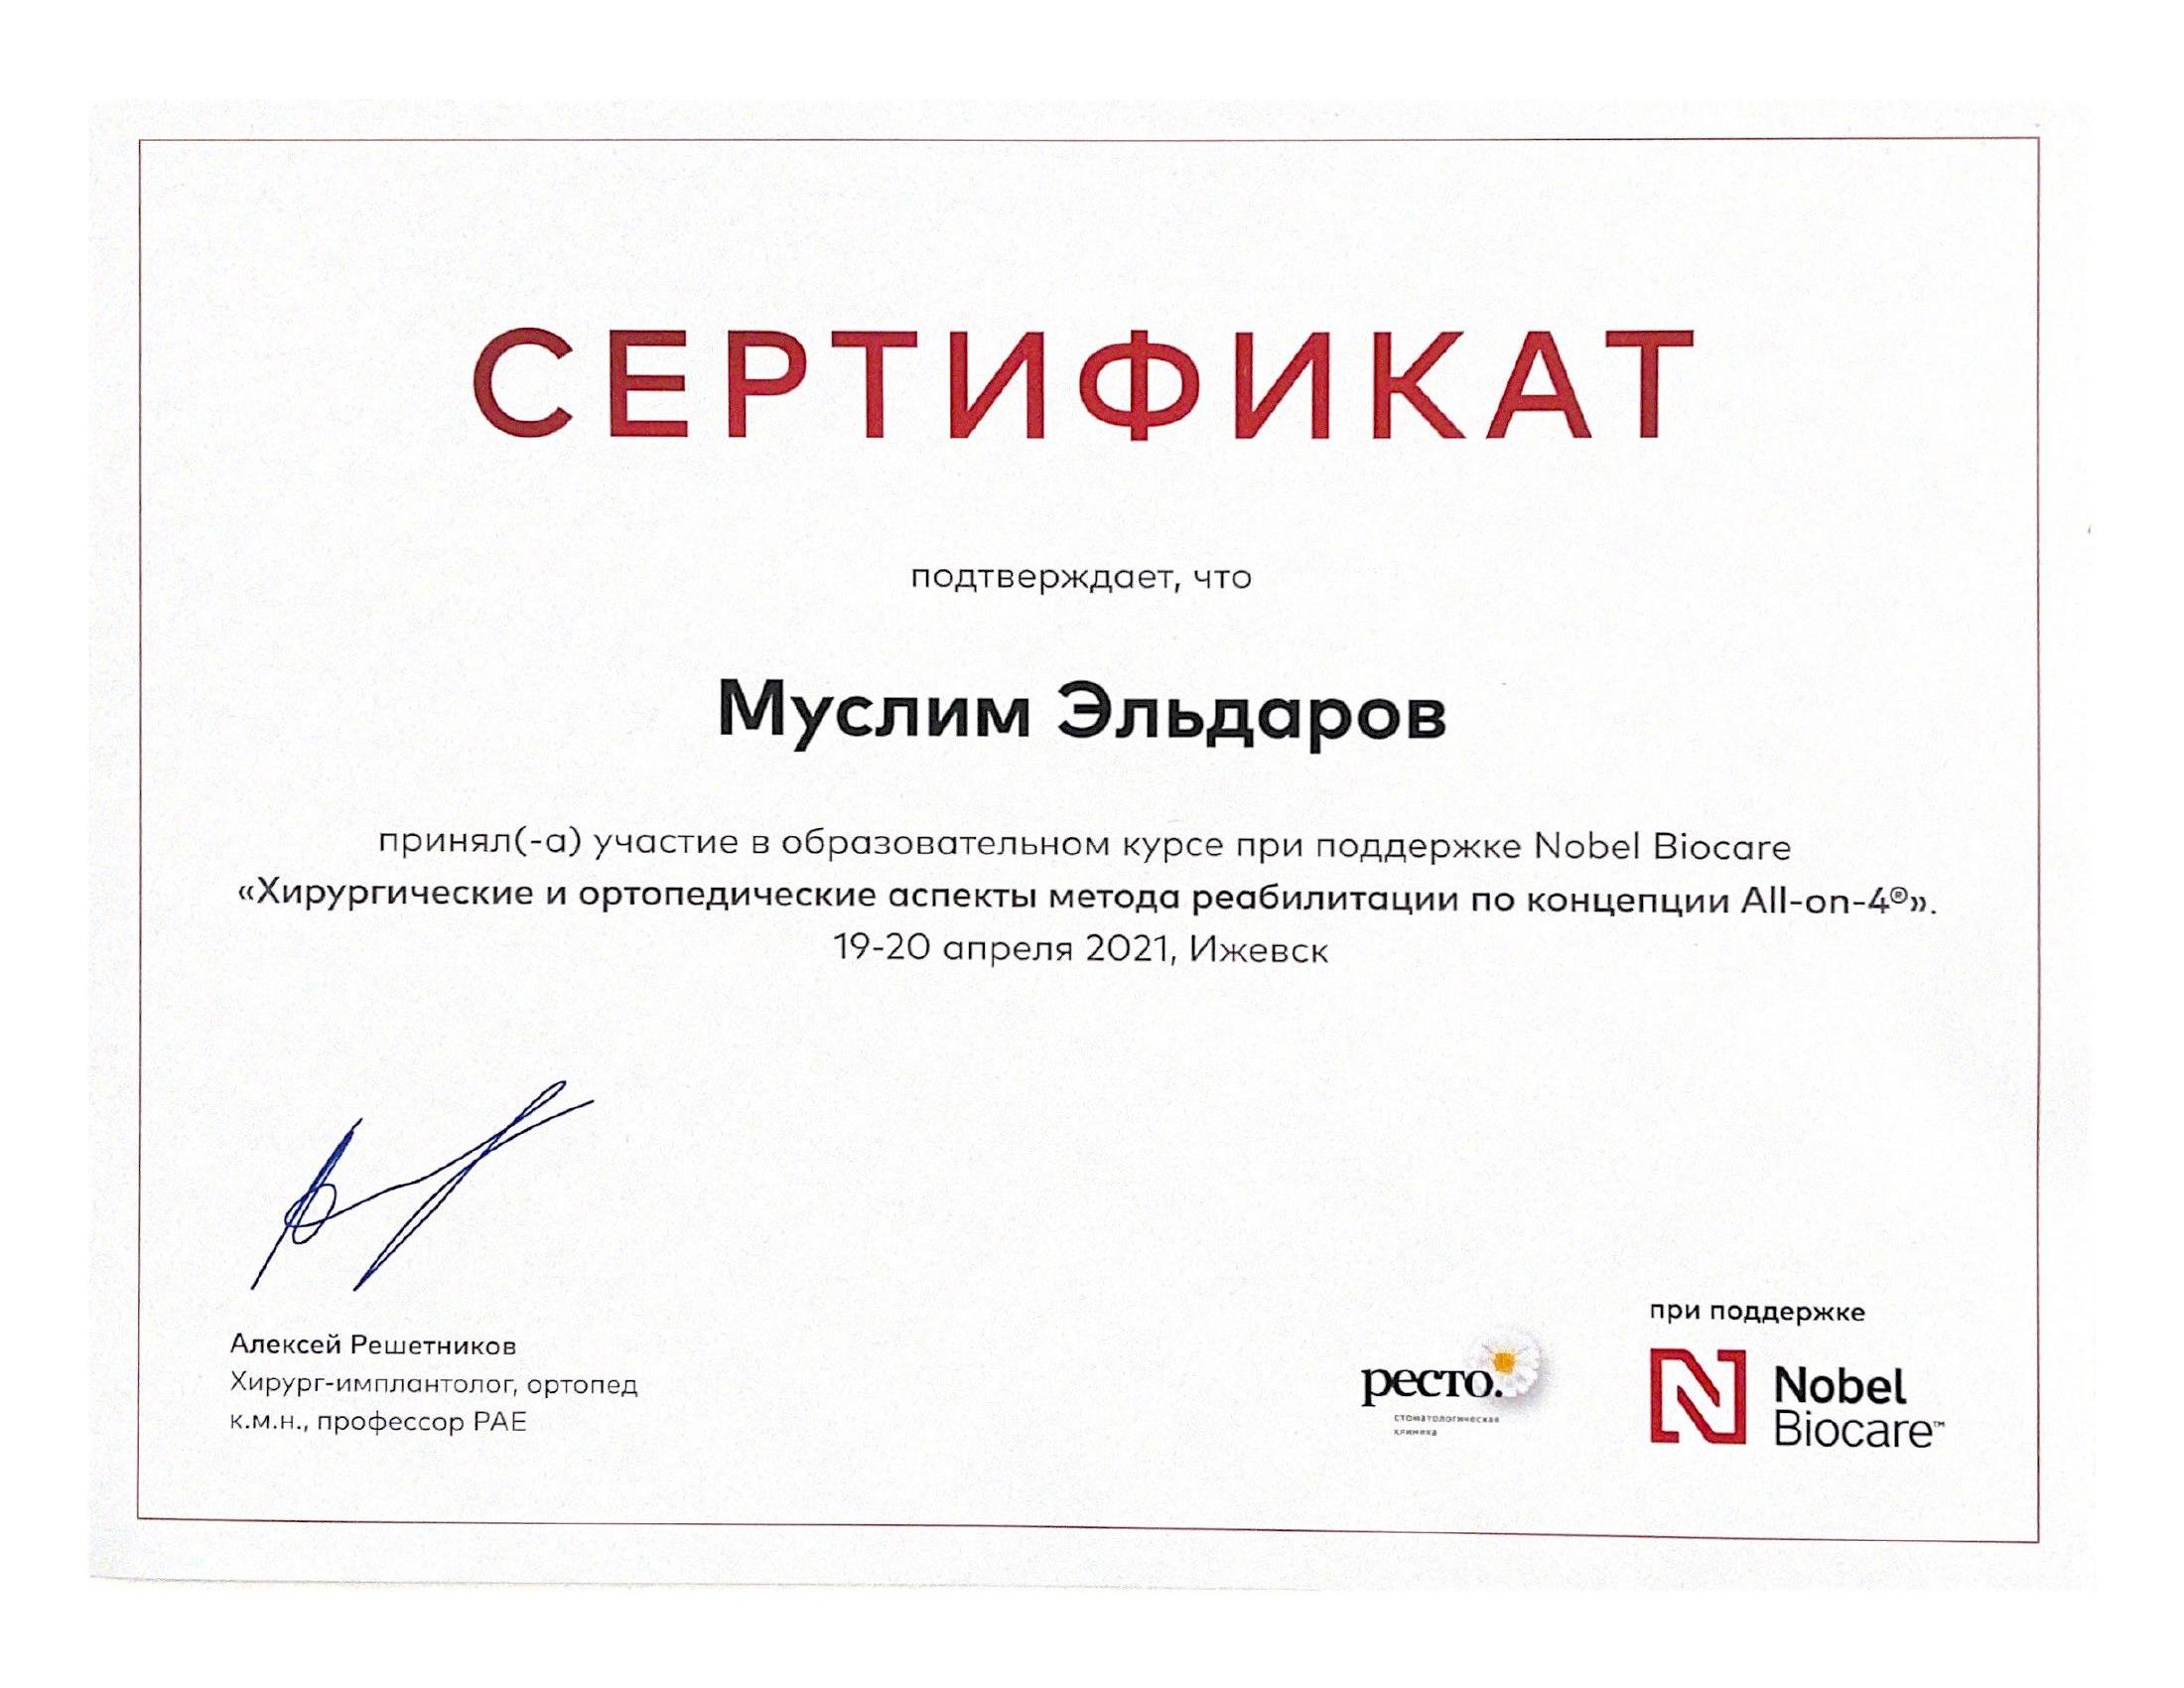 Сертификат 10 получил Муслим Камилович